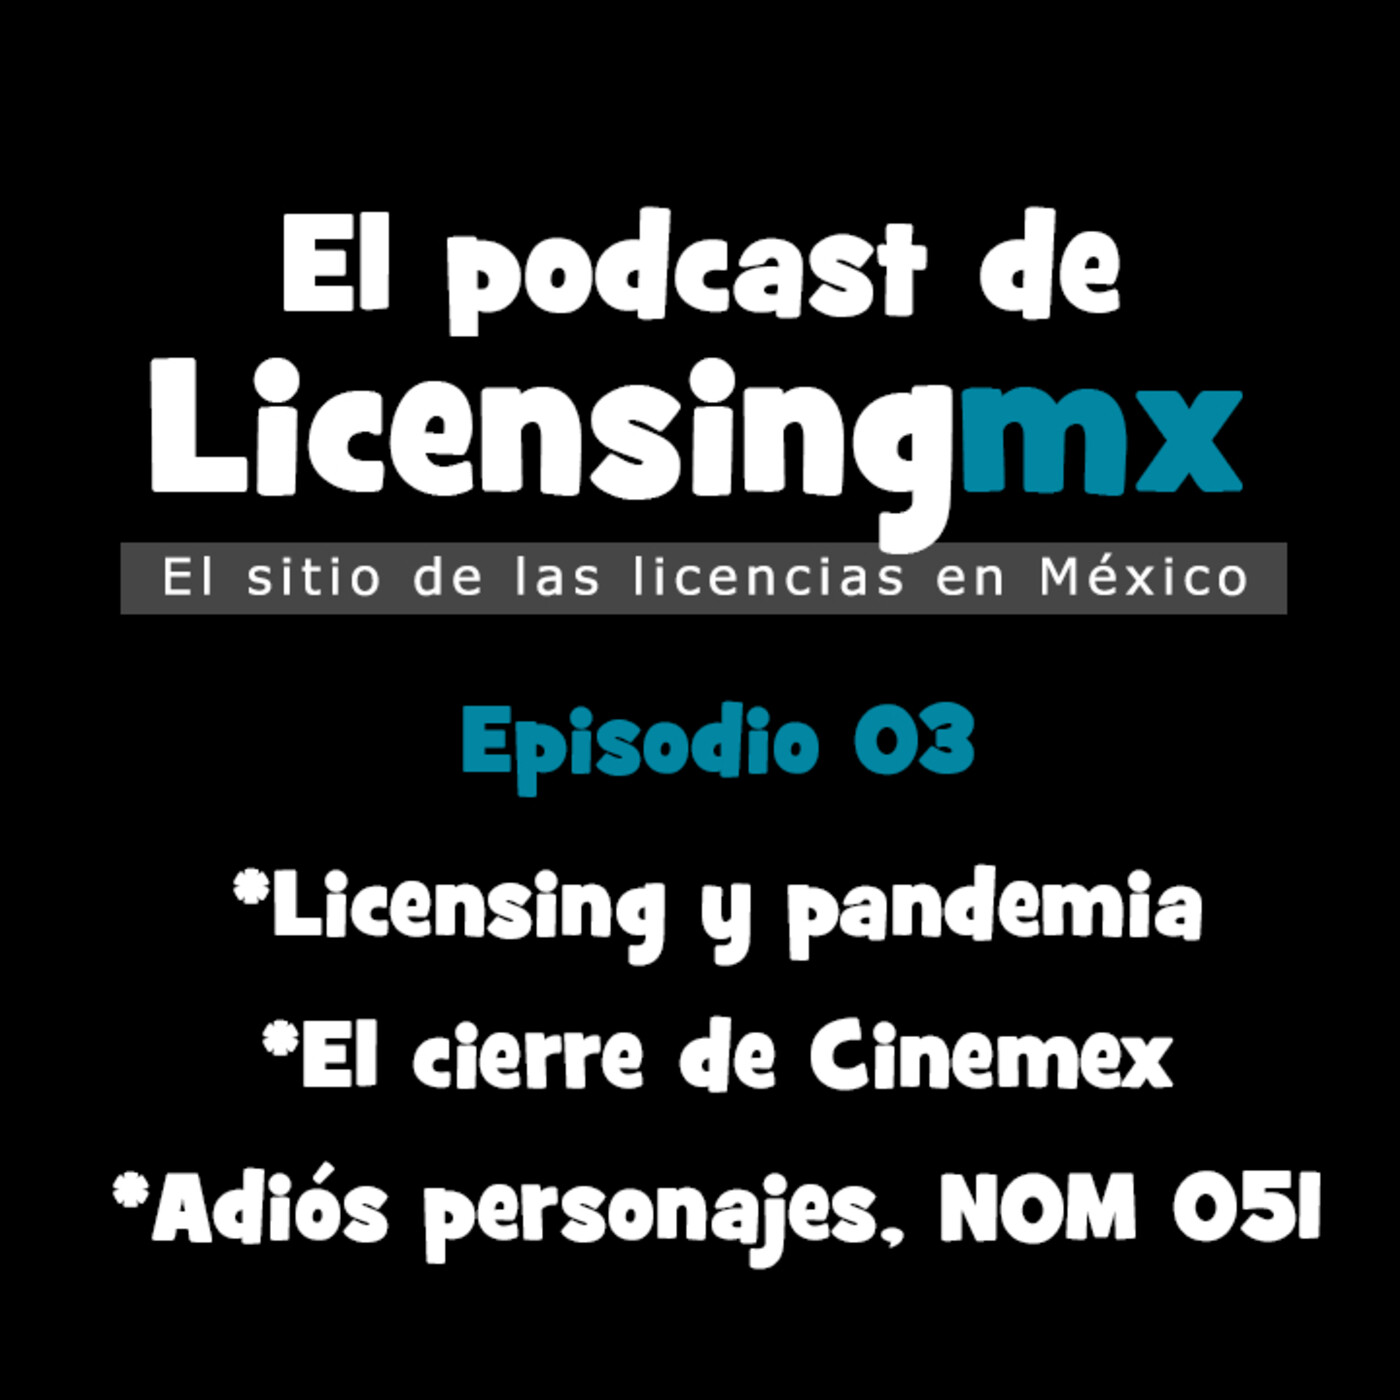 LMX Licensing y Pandemia